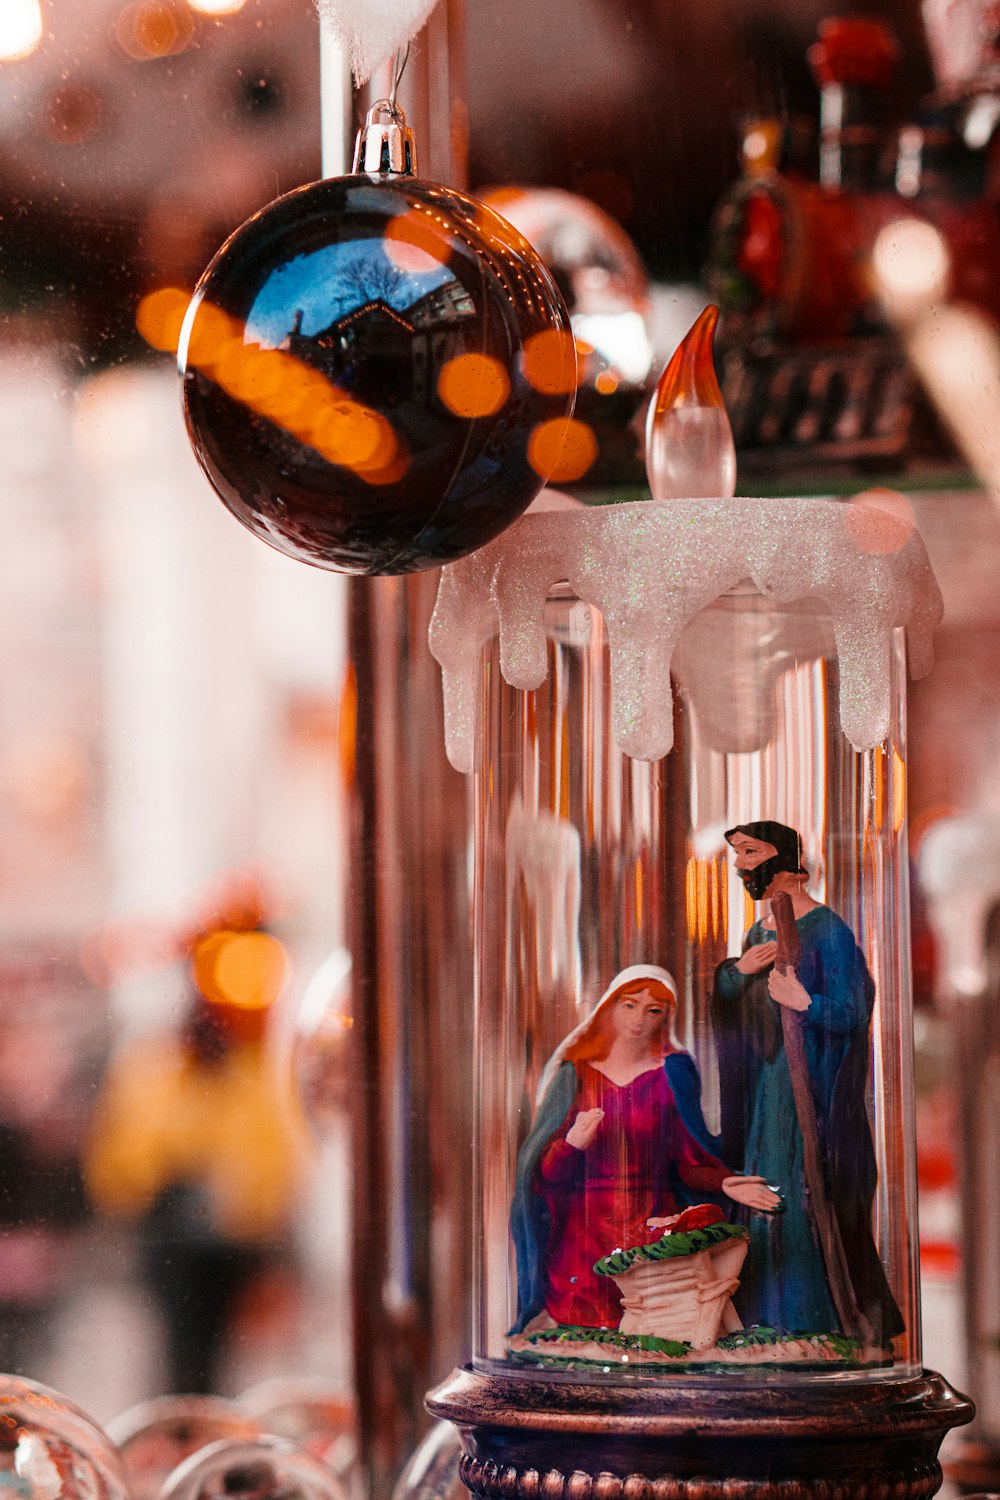 The Nativity scene candle decor